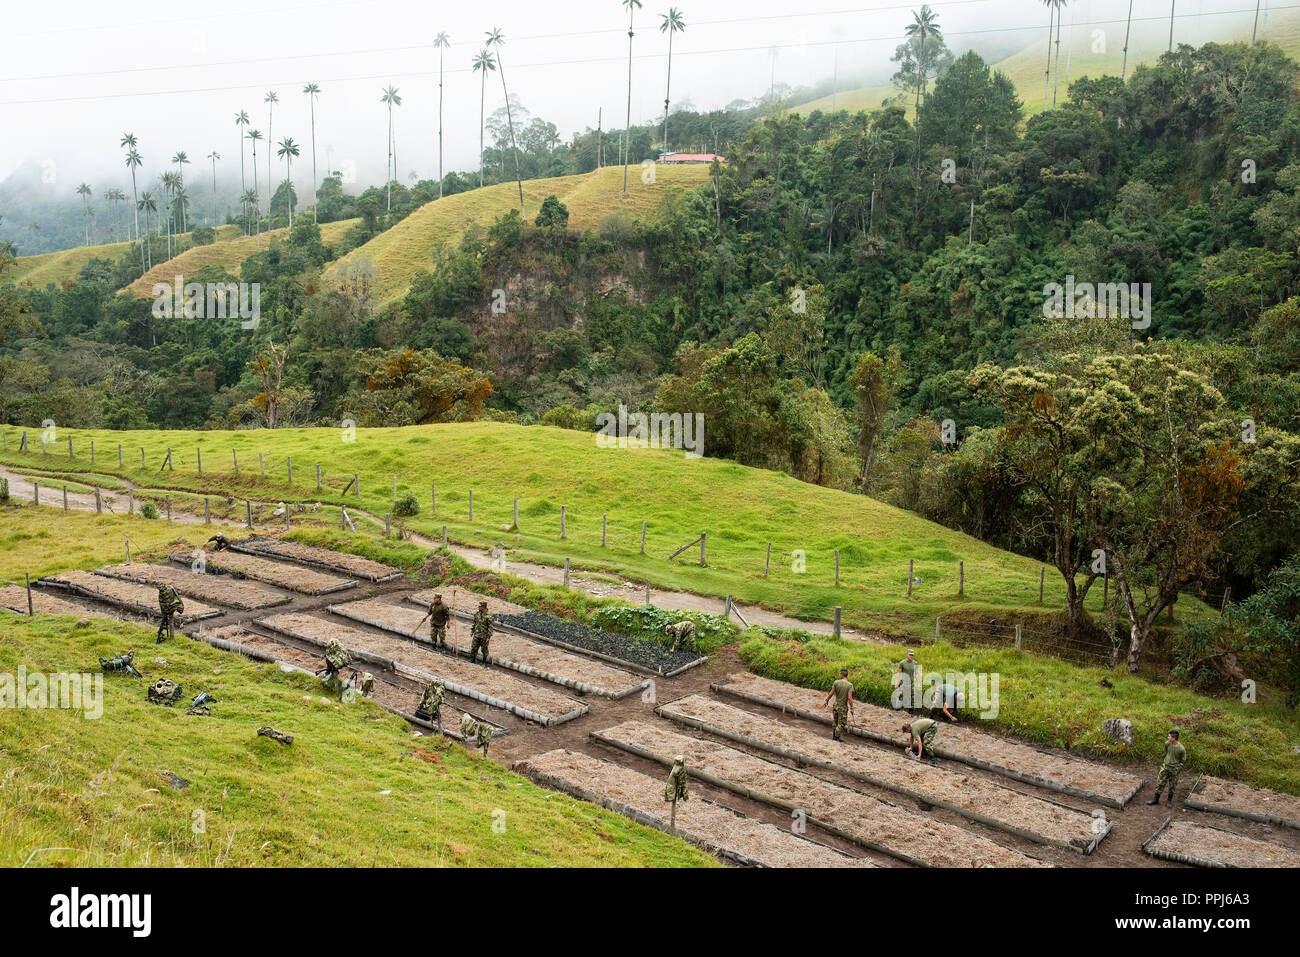 10/10 Reportage photos : la vue complète avec les militaires en action. L'Armée nationale travaillant sur la plantation de palmiers de cire dans la vallée de Cocora, Colombie. 13 Sep 2018 Banque D'Images